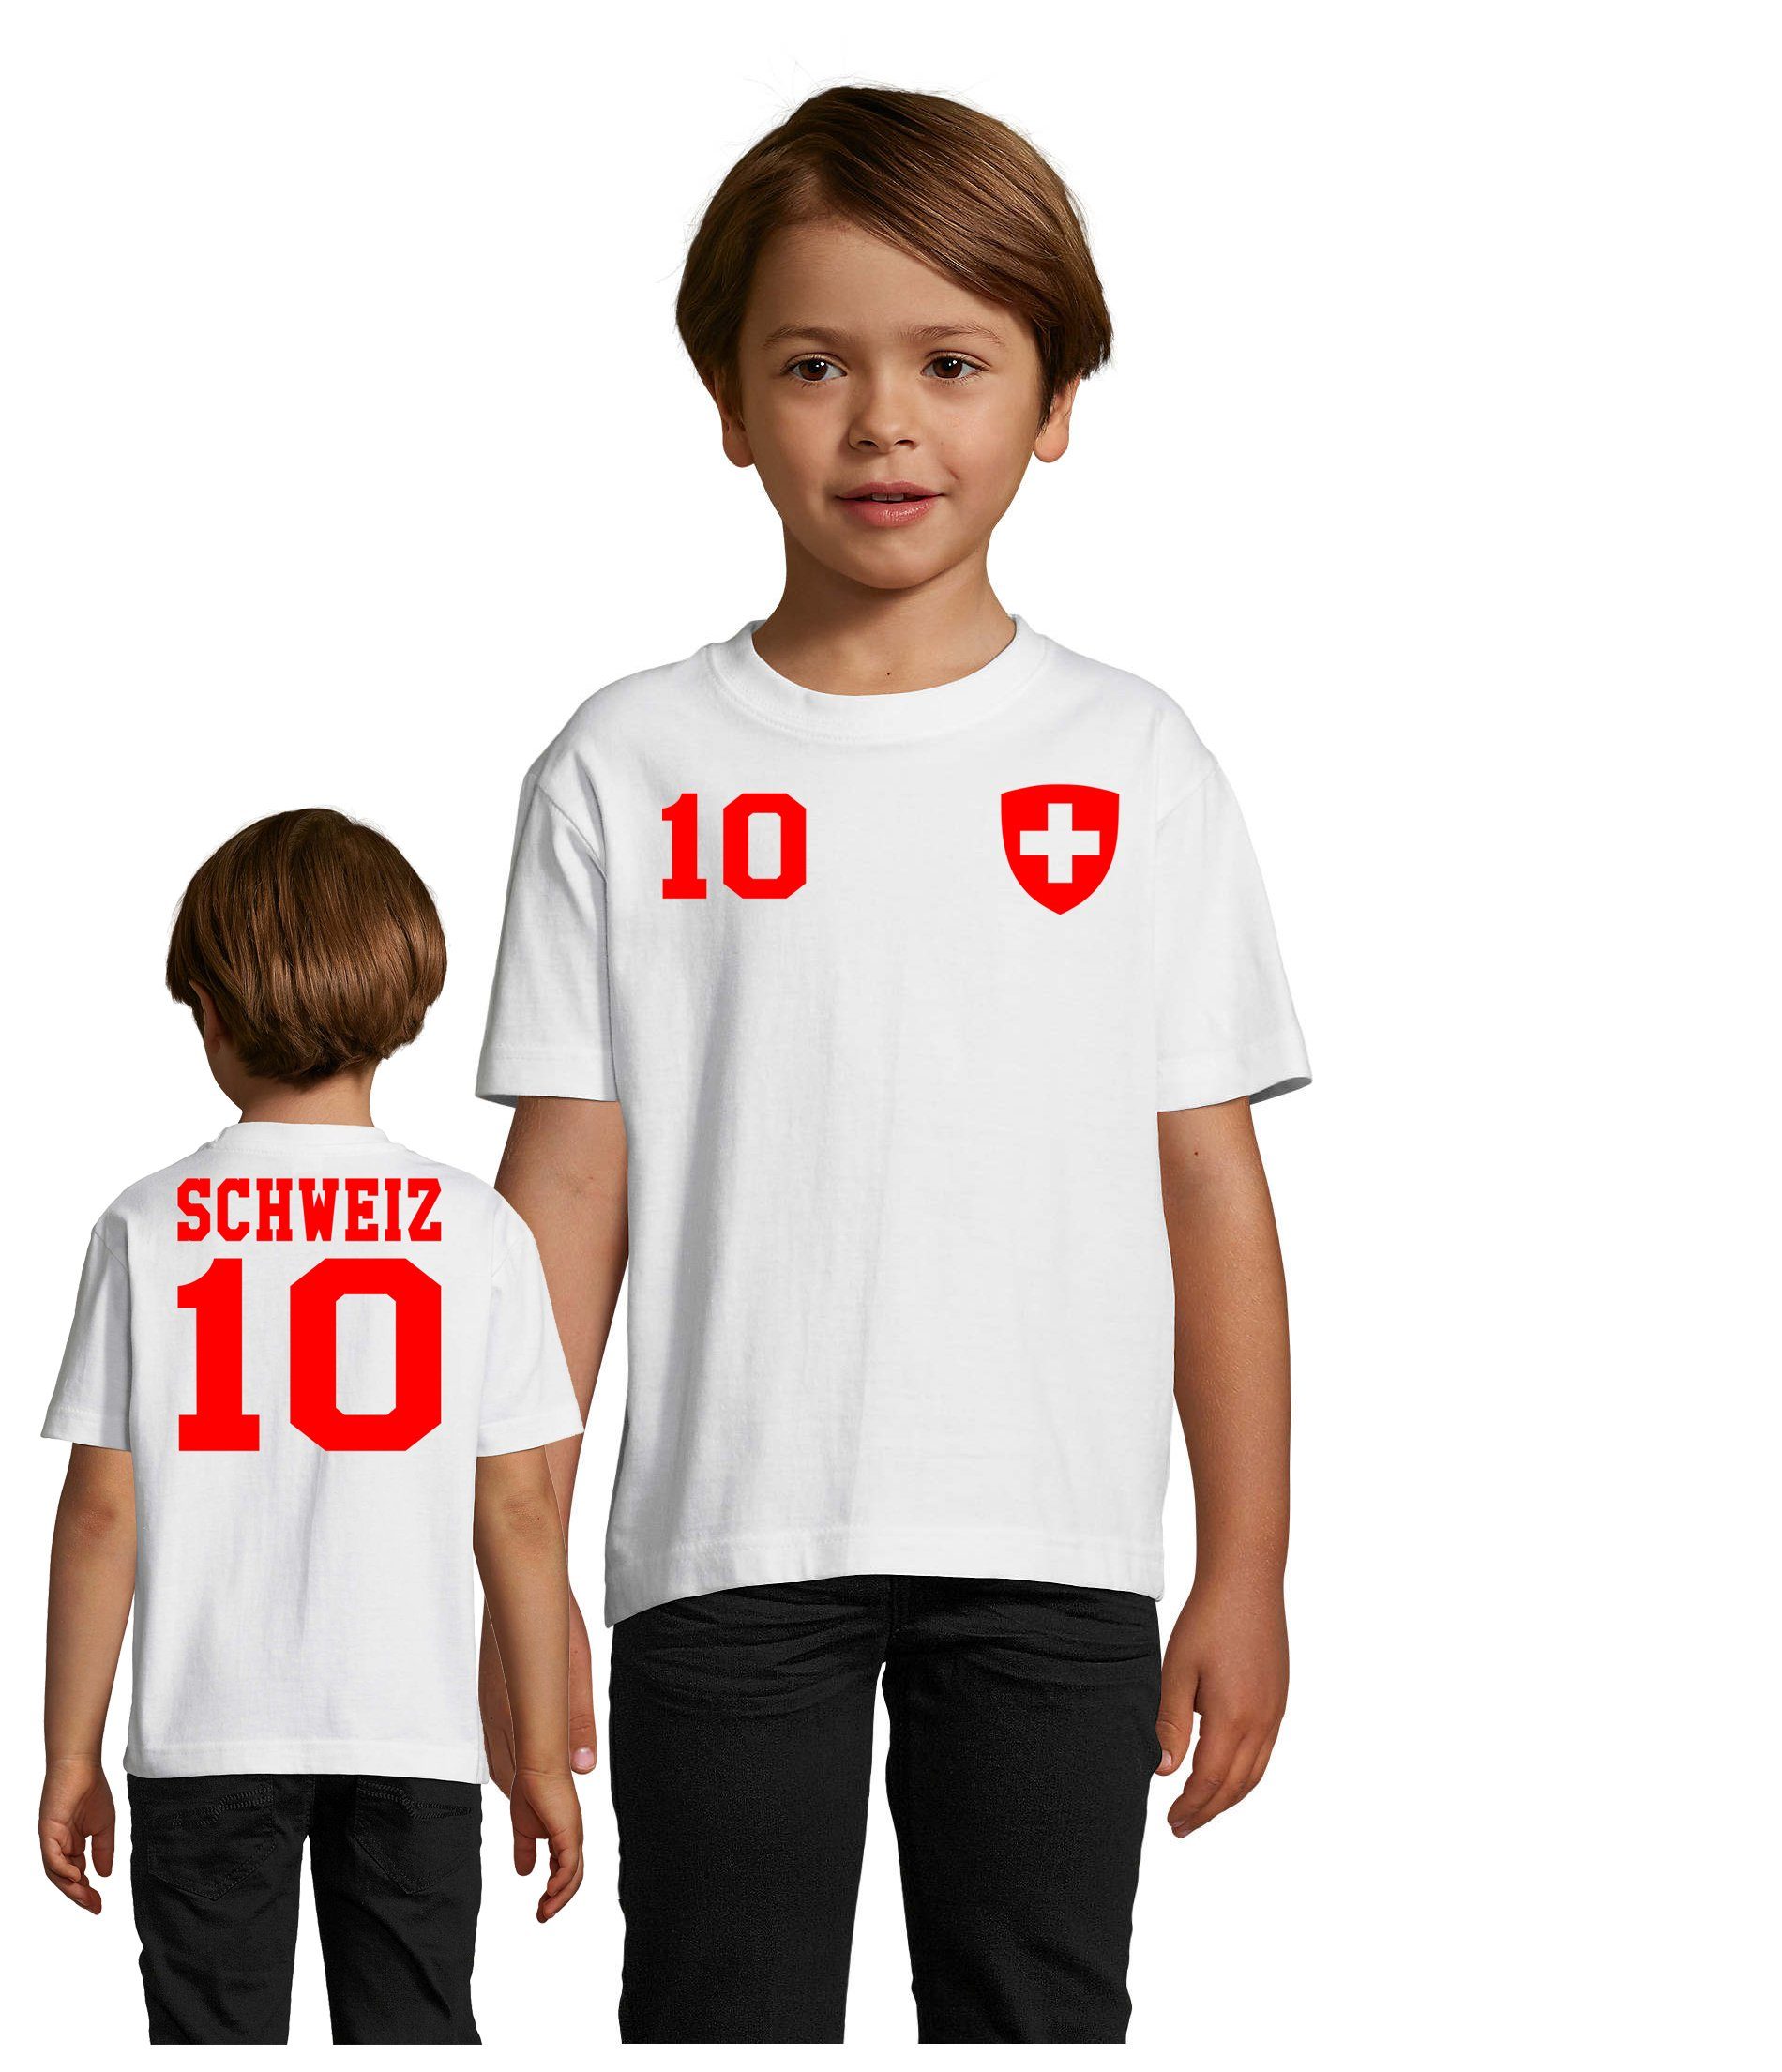 EM Schweiz Kinder Brownie Fußball Europa Swiss Sport WM & T-Shirt Trikot Blondie Meister